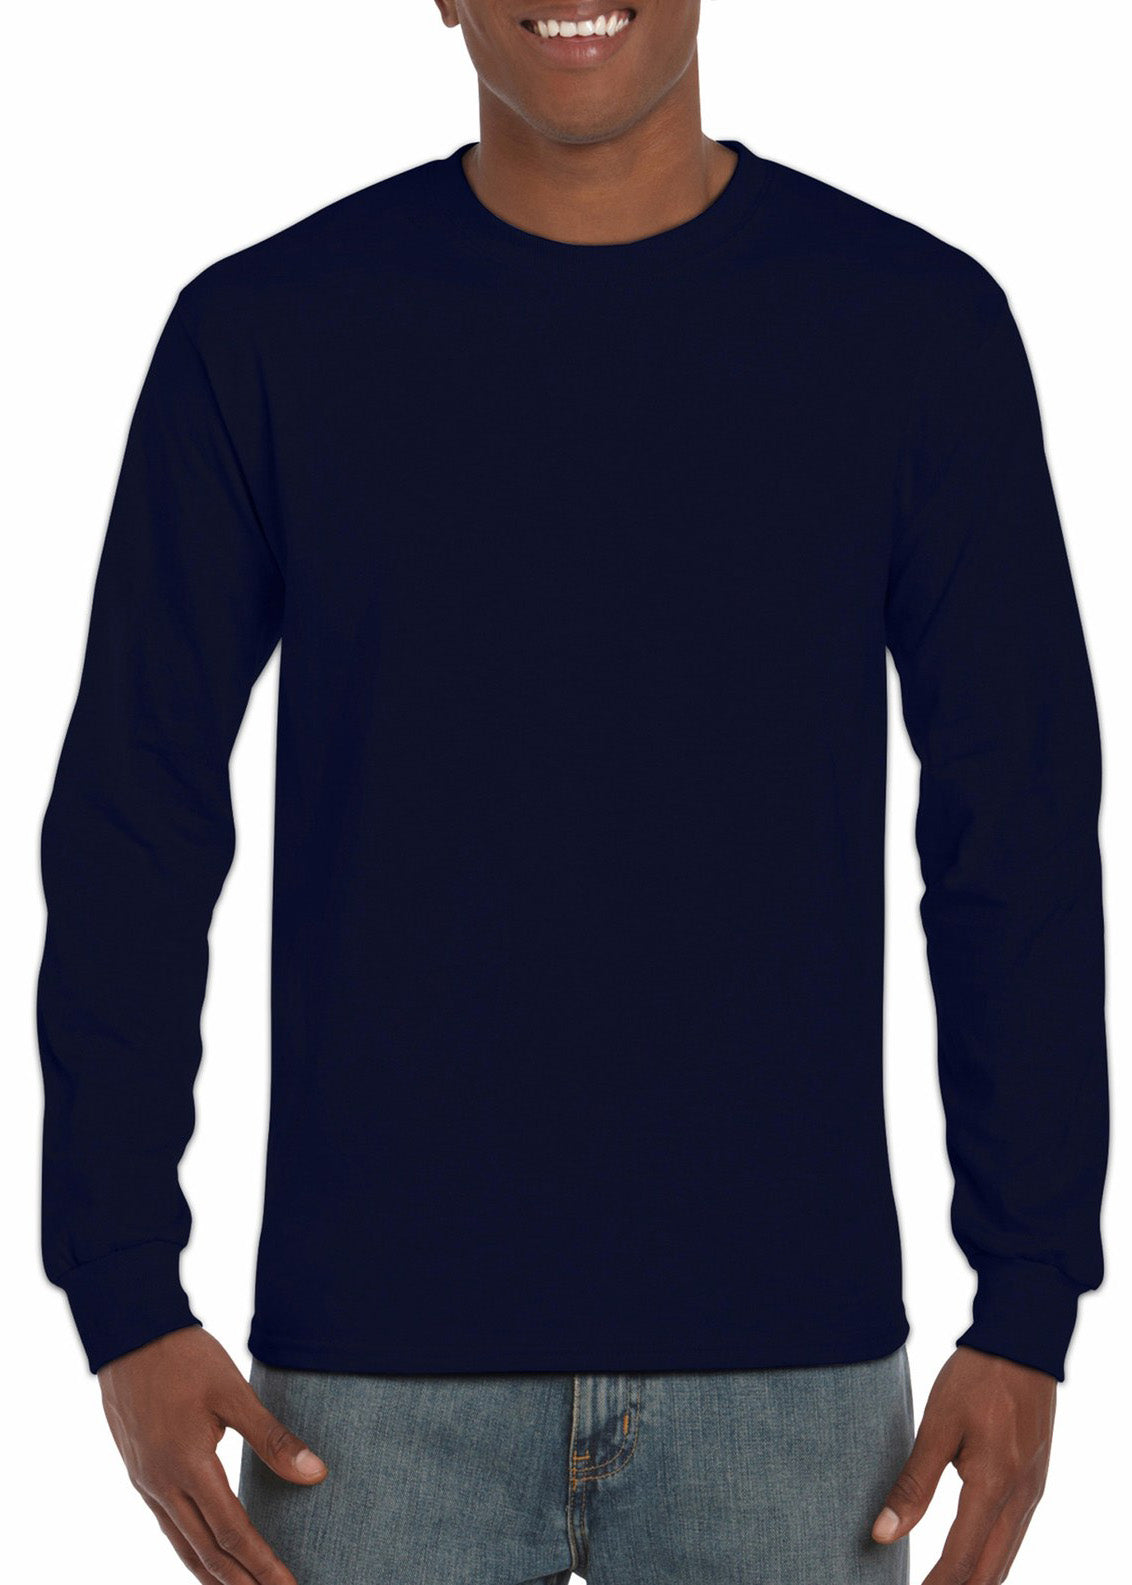 Gildan Ultra Cotton Adult Long Sleeve T-shirt